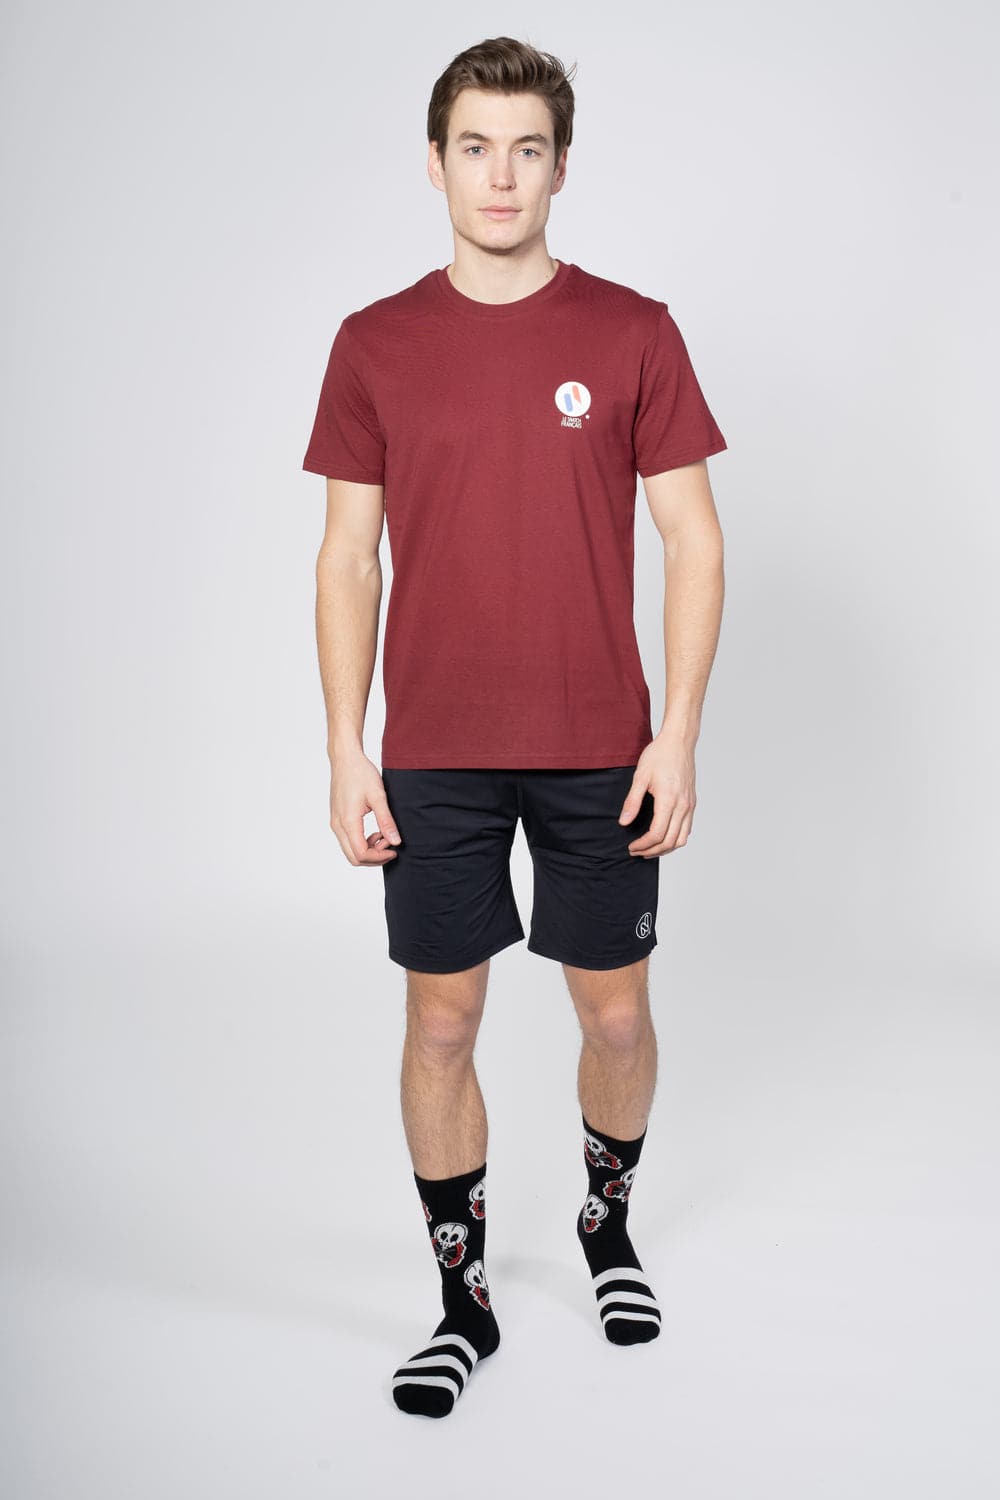 T-shirt sport homme Snatcheur - Coton Bio